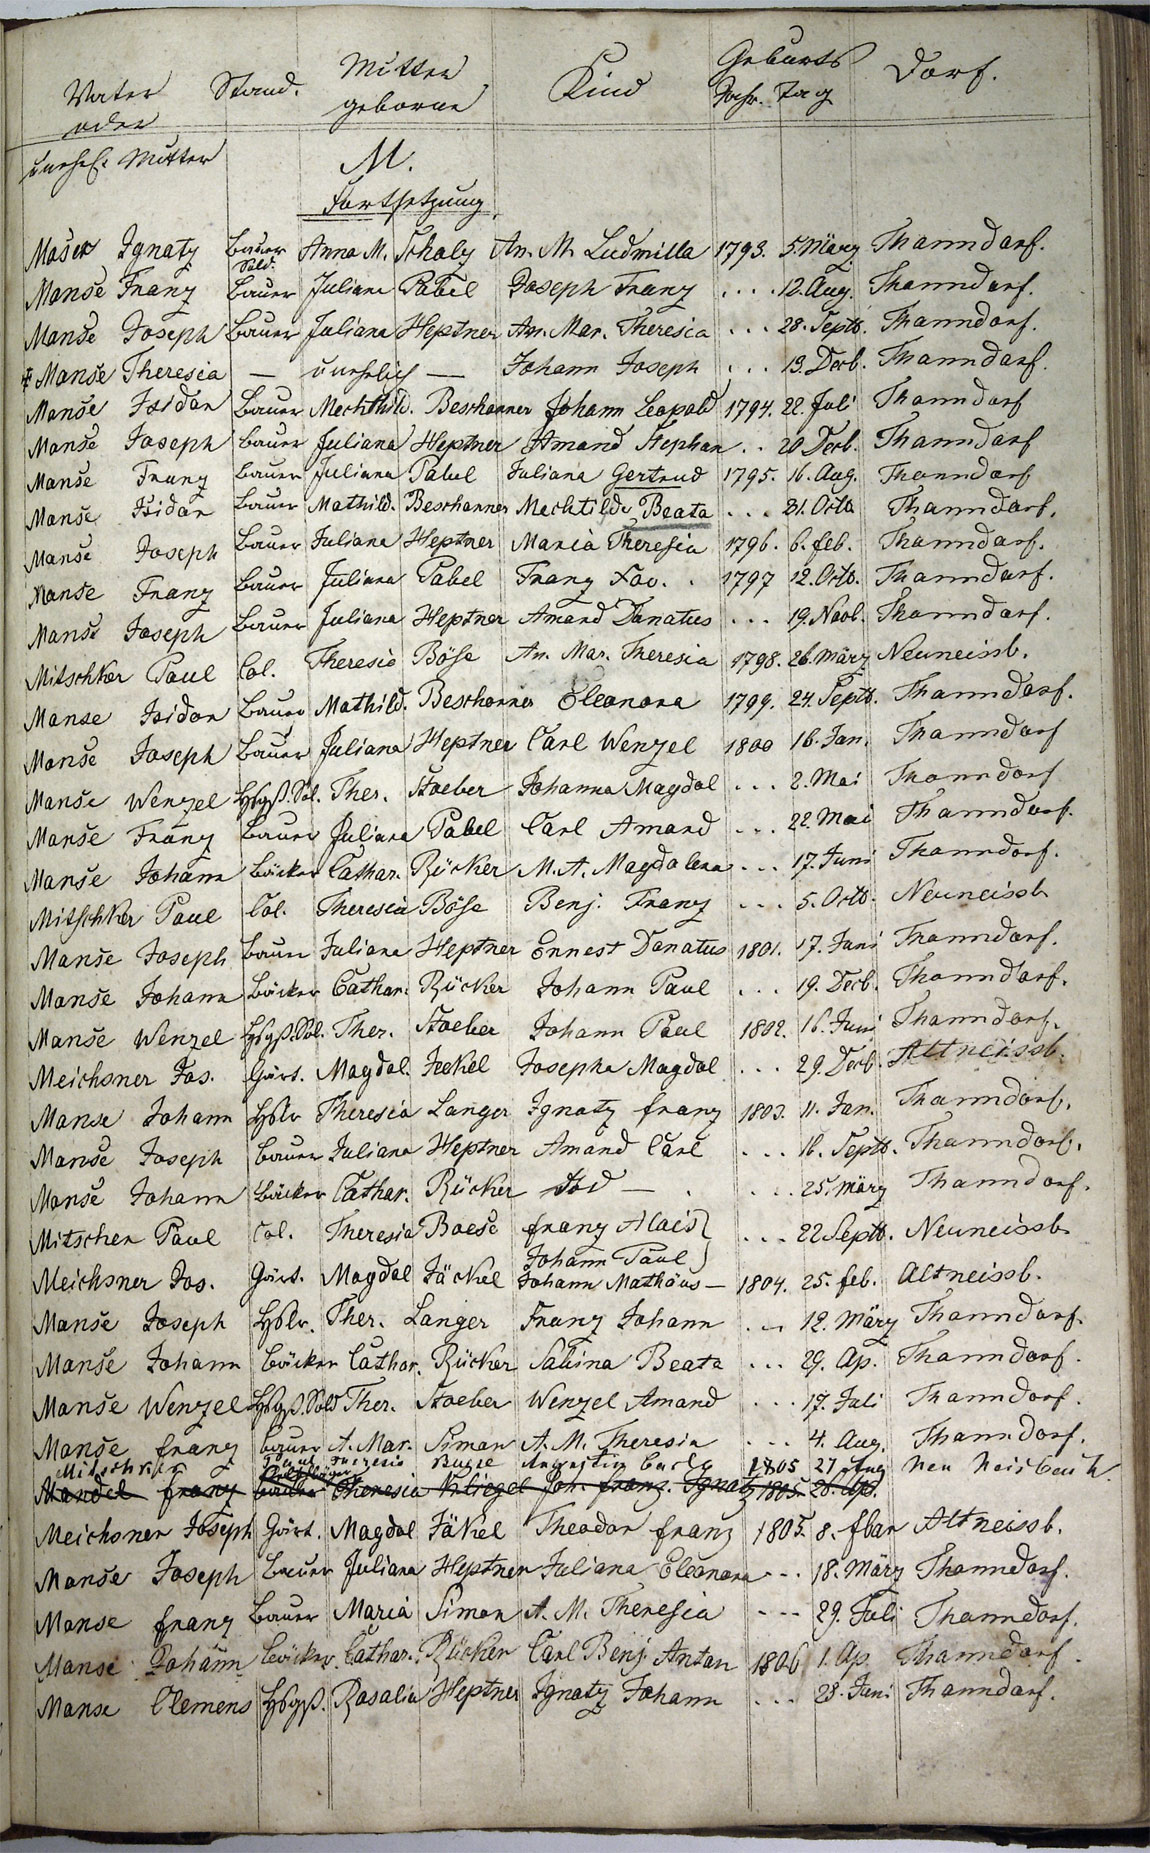 Taufregister 1770 - 1889 Seite 97